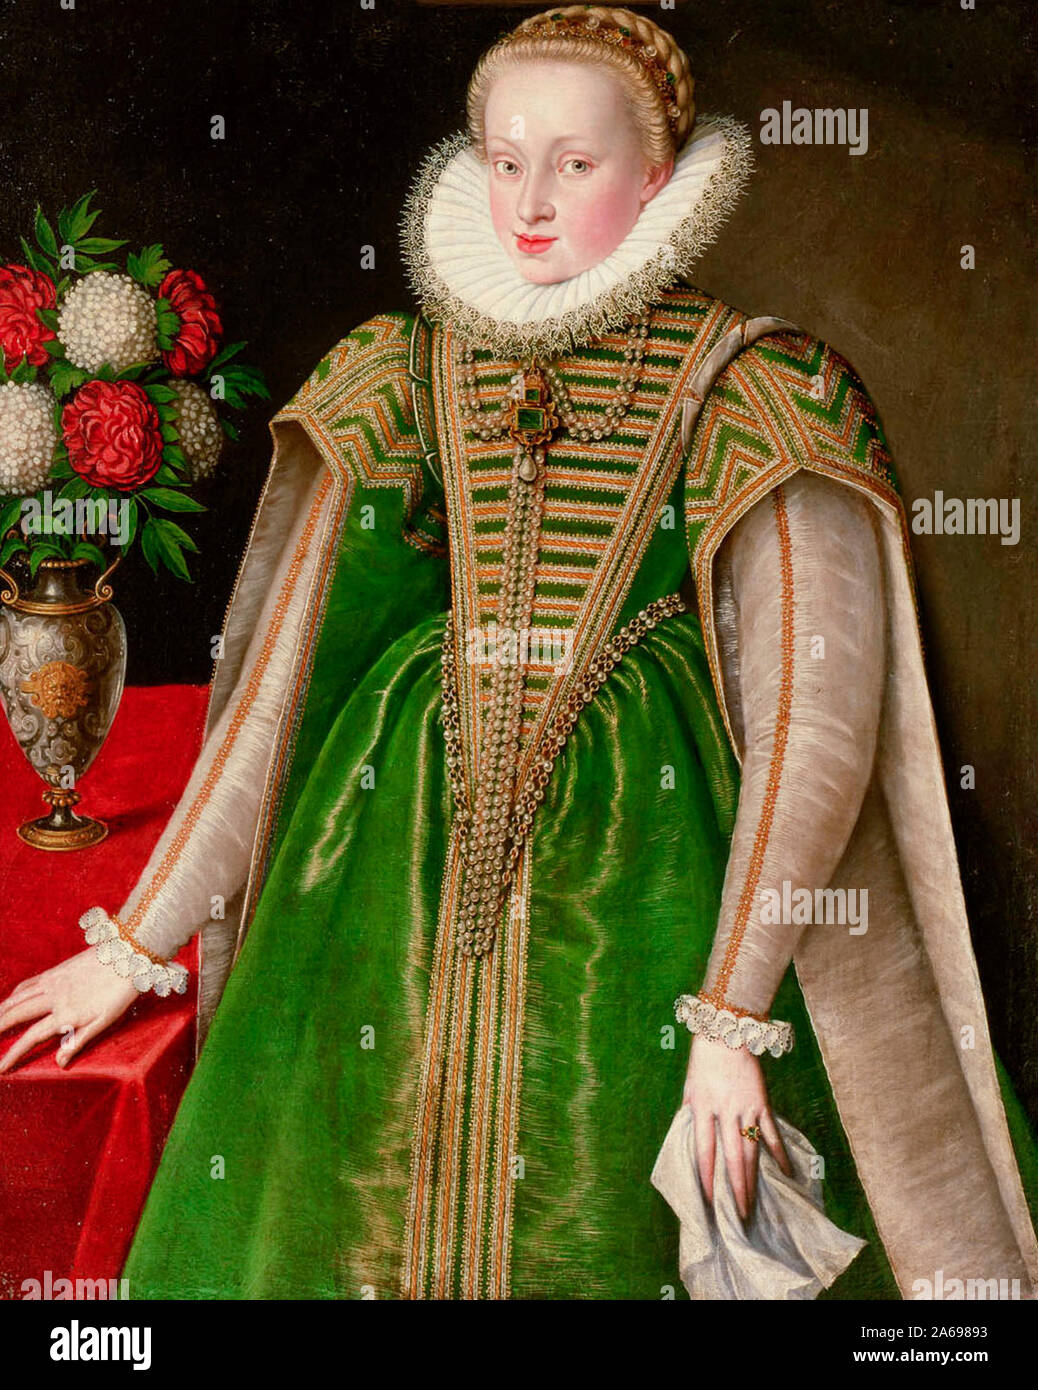 L'archiduchesse Maria Christina (1574-1621) dans la pièce de tissu vert, genou, vers 1592 Banque D'Images